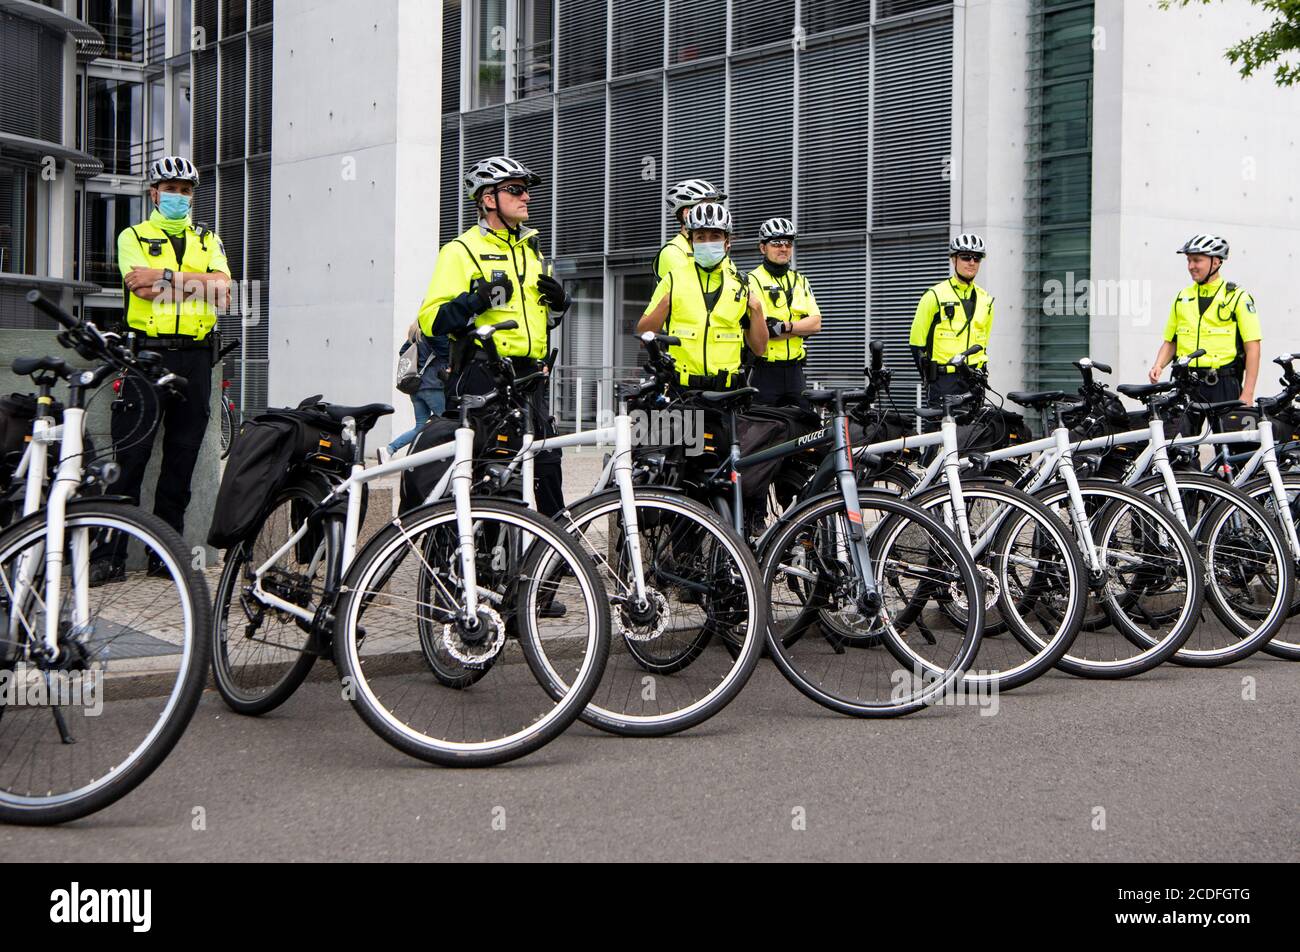 Berlin, Allemagne. 27 août 2020. Les policiers de l'équipe de bicyclettes de la police de Berlin se tiennent sur le bord d'une manifestation dans le district gouvernemental. Credit: Bernd von Jutrczenka/dpa/Alamy Live News Banque D'Images